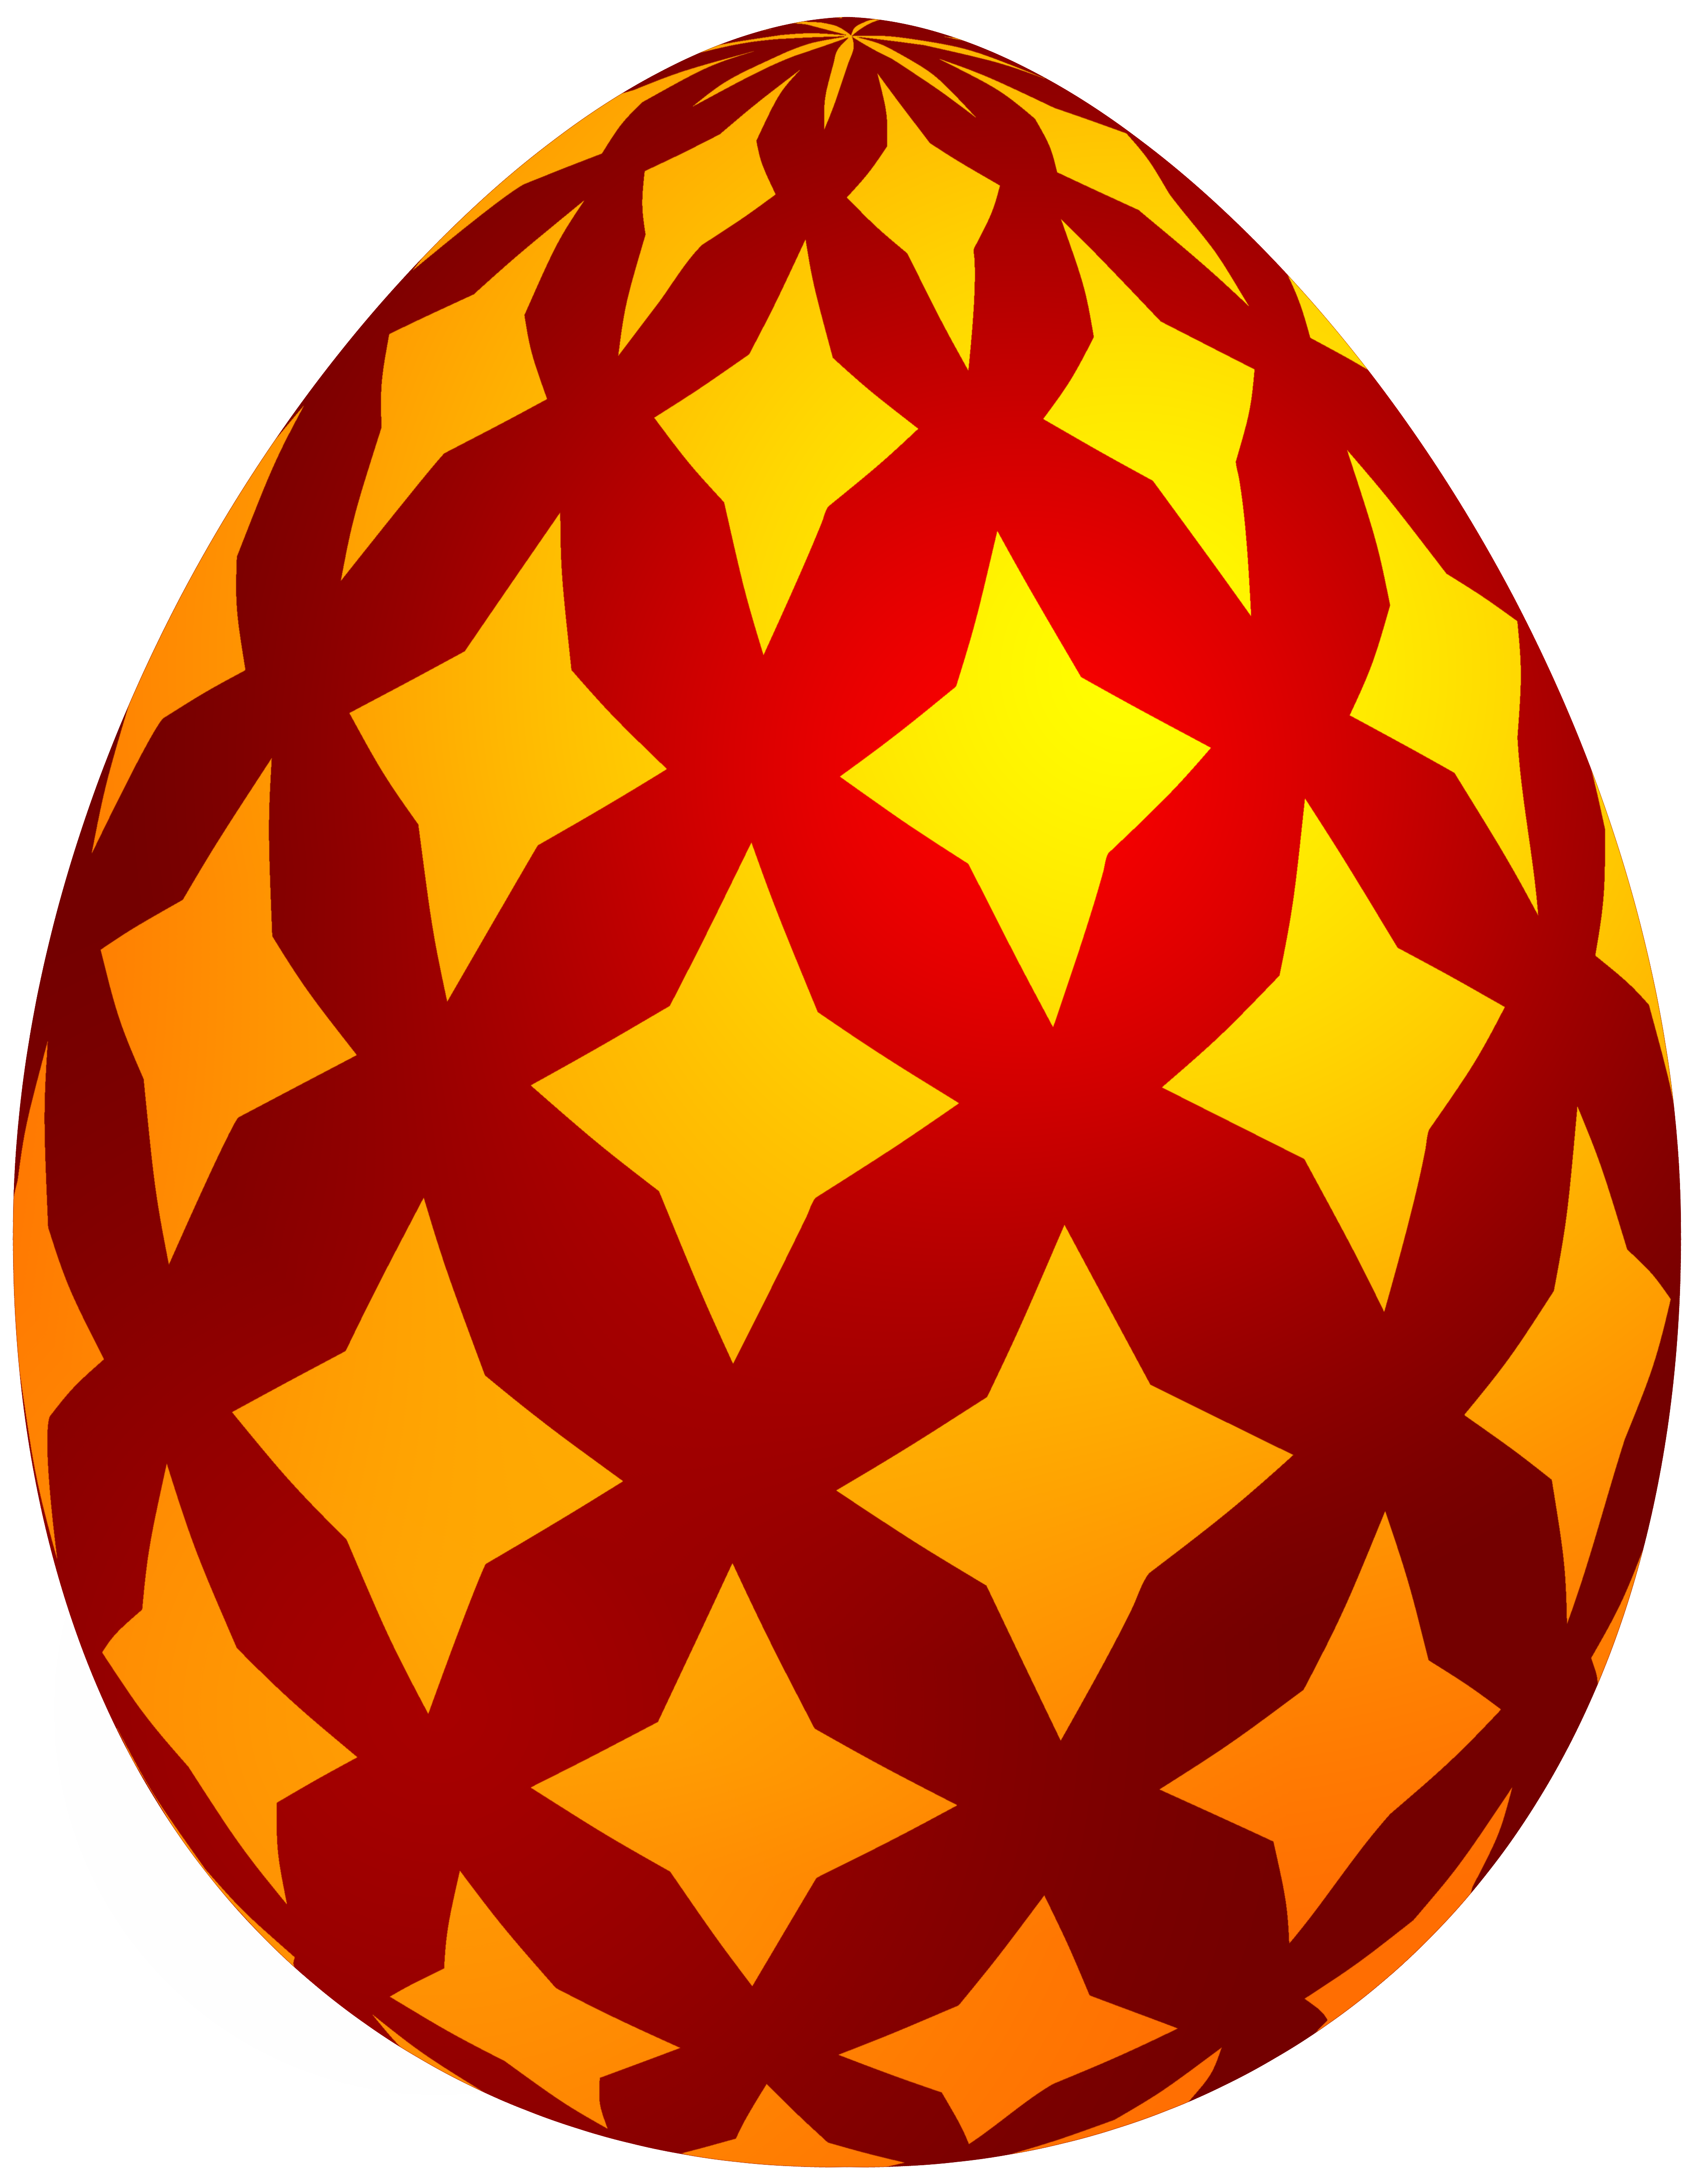 egg clipart